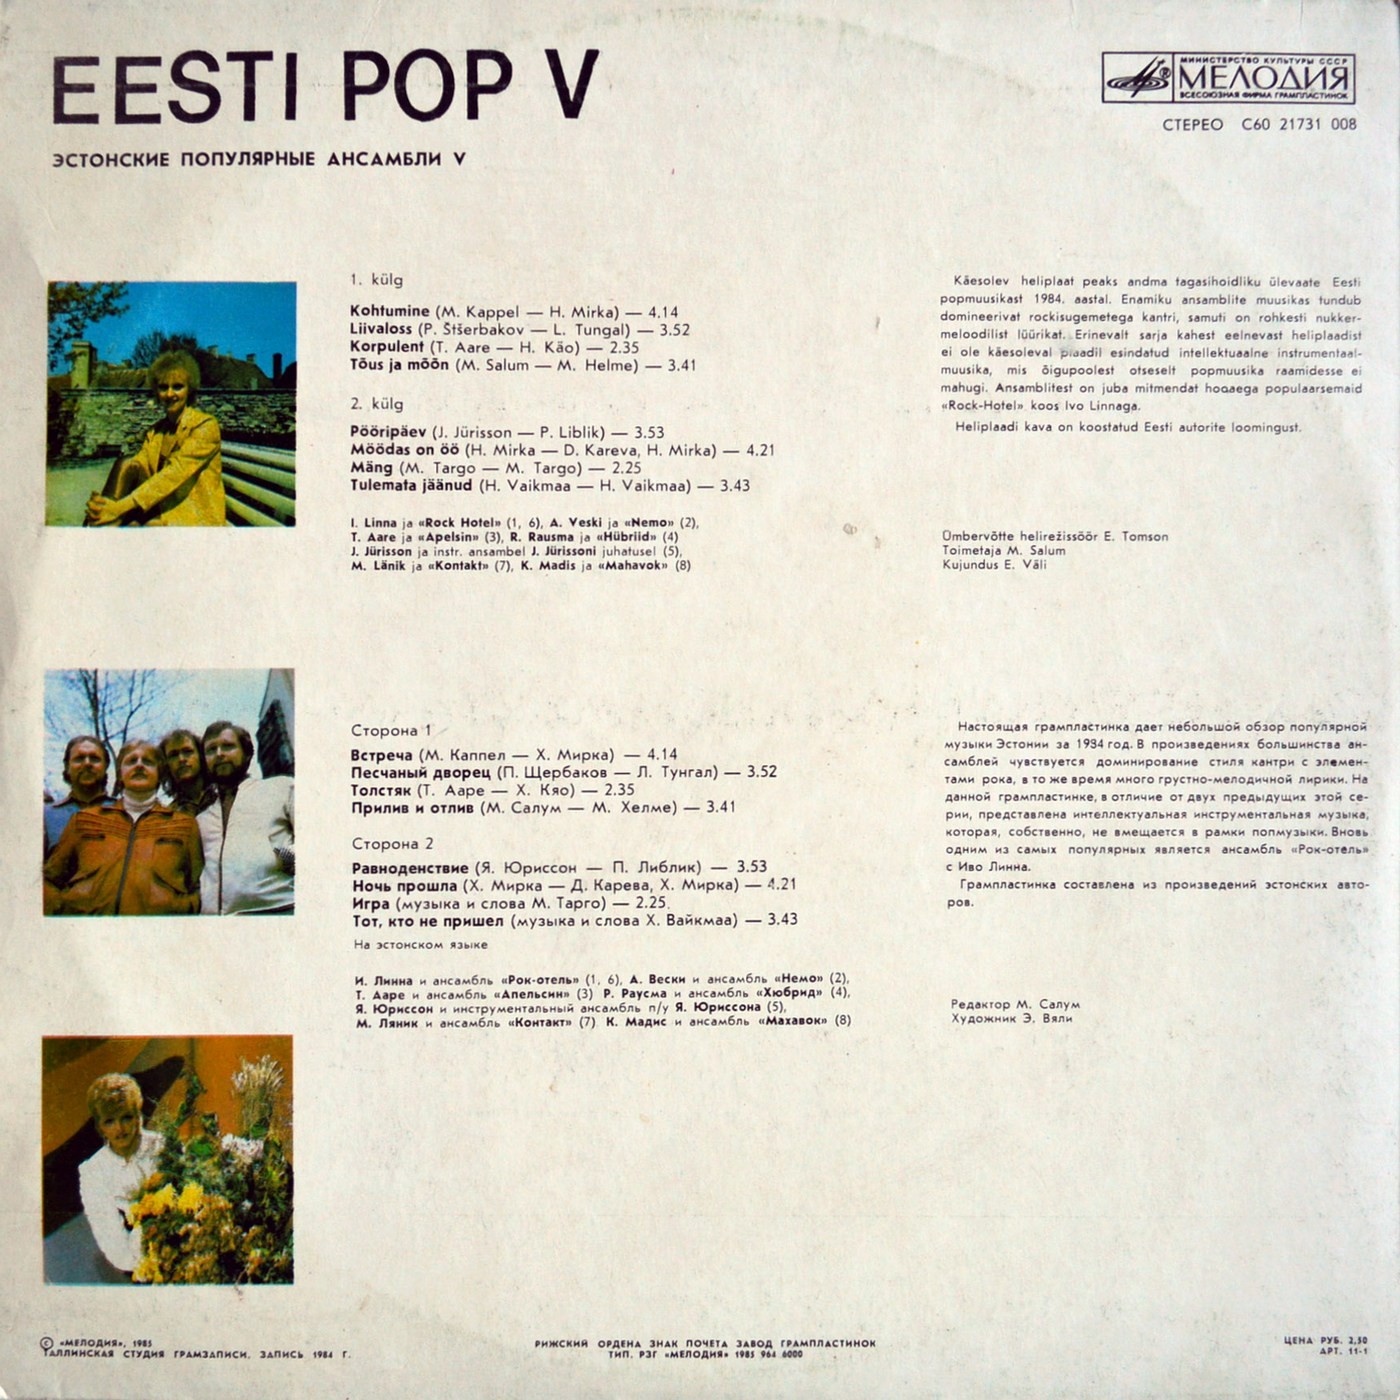 ЭСТОНСКИЕ ПОПУЛЯРНЫЕ АНСАМБЛИ 5 (Eesti Pop V) — на эстонском языке